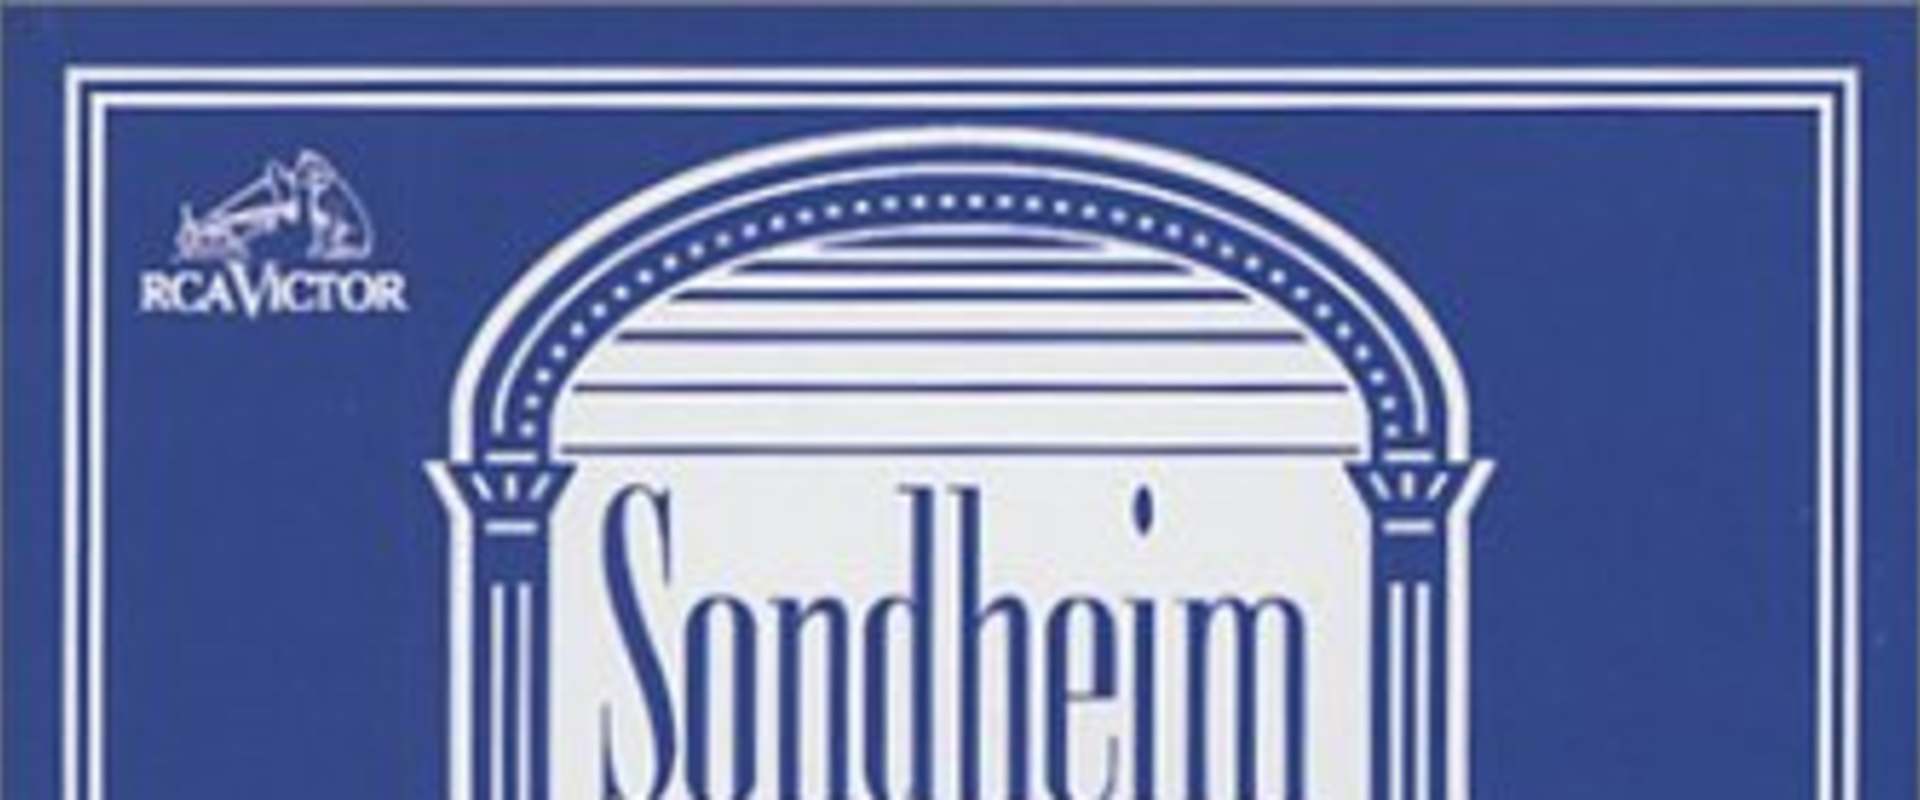 Sondheim: A Celebration at Carnegie Hall background 2